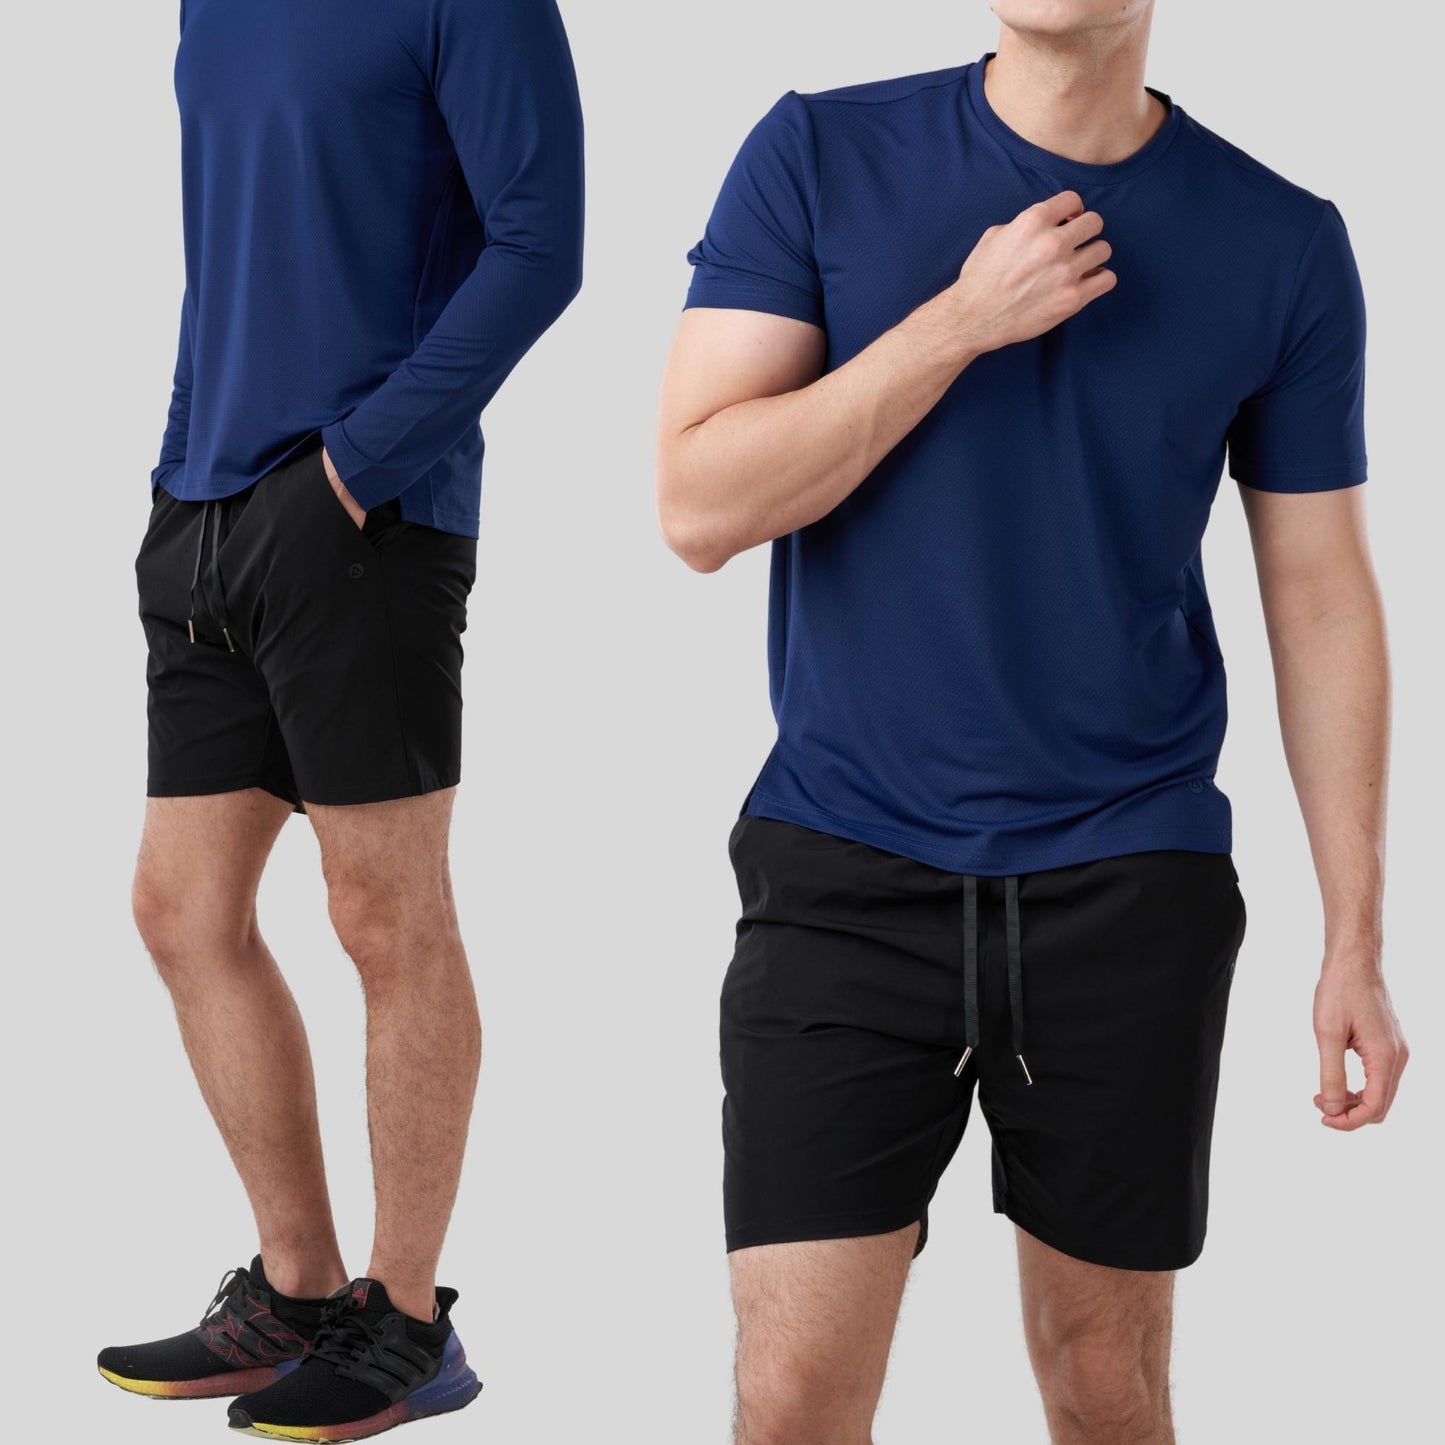 AVIVA UV Protection Leisure Men Short Pants (91-2018)